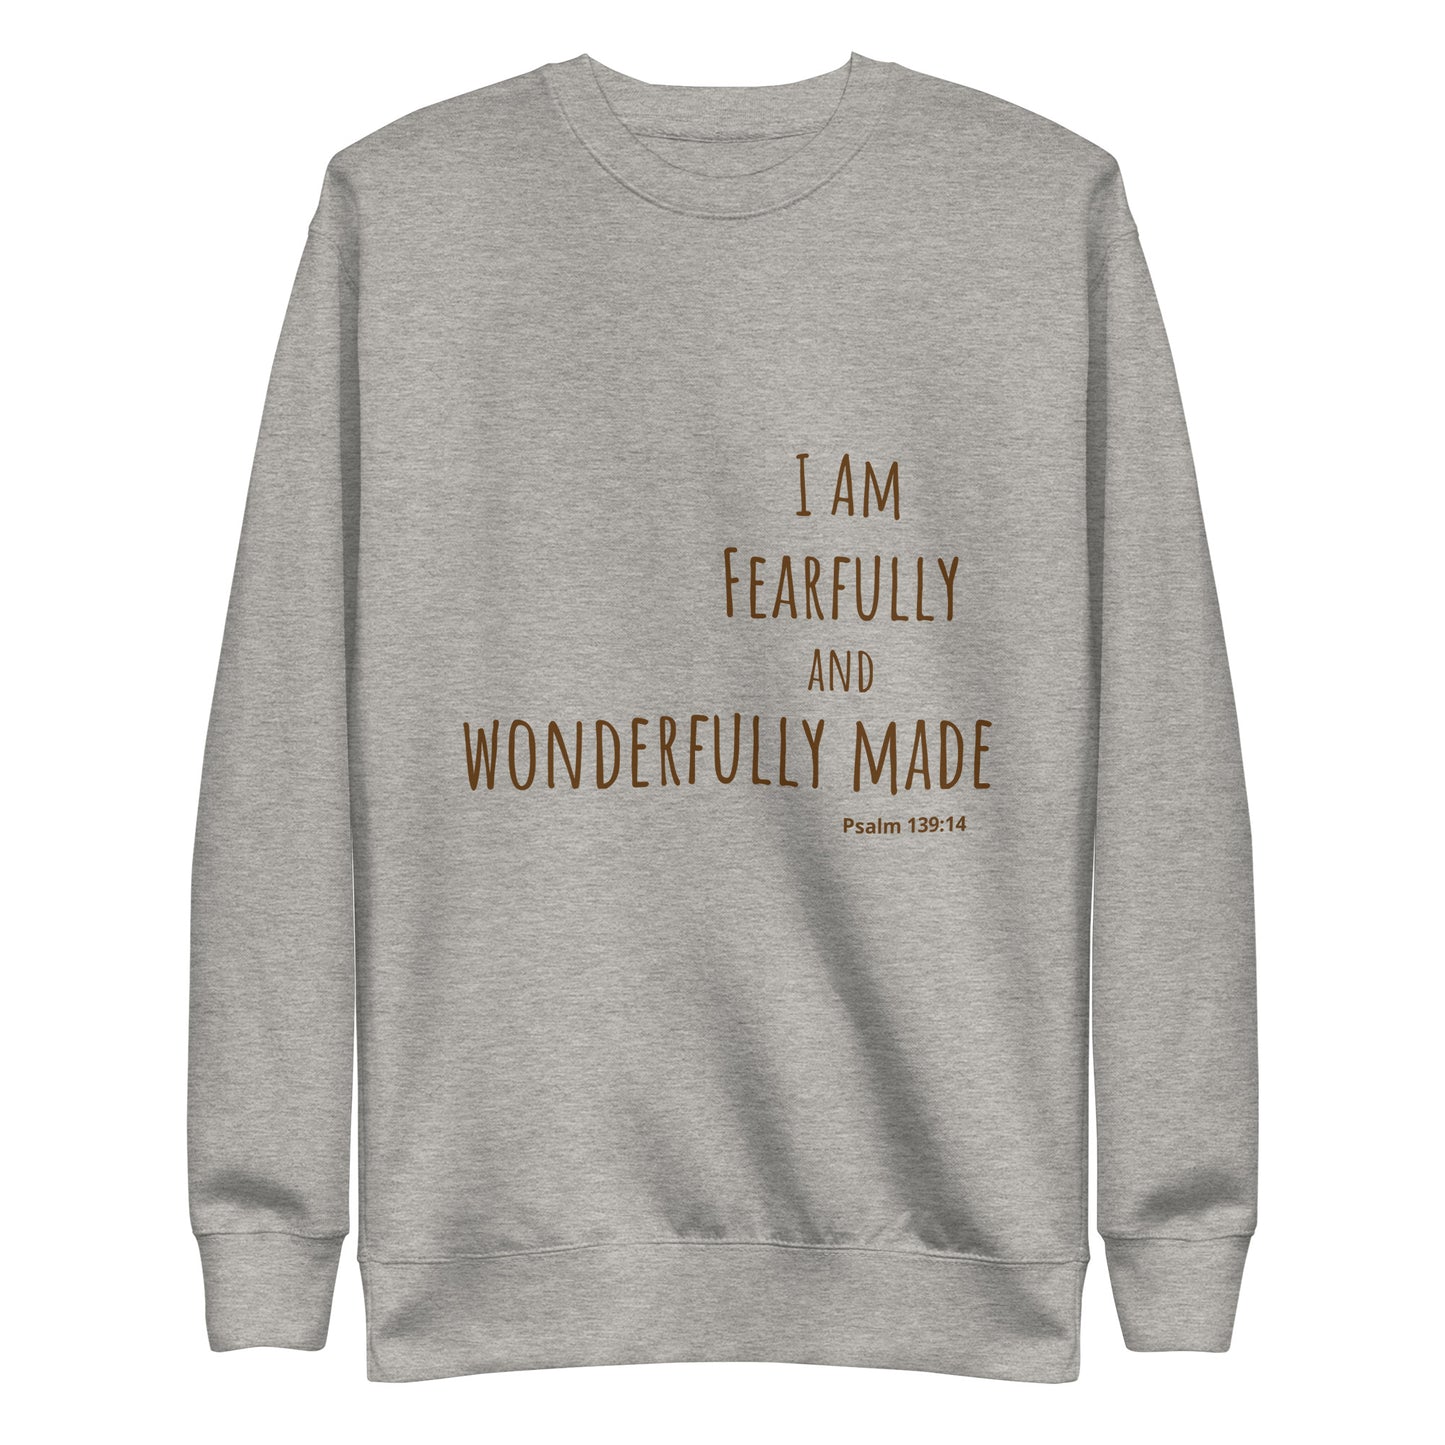 God Said - "Fearfully and Wonderfully Made" Unisex Premium Sweatshirt